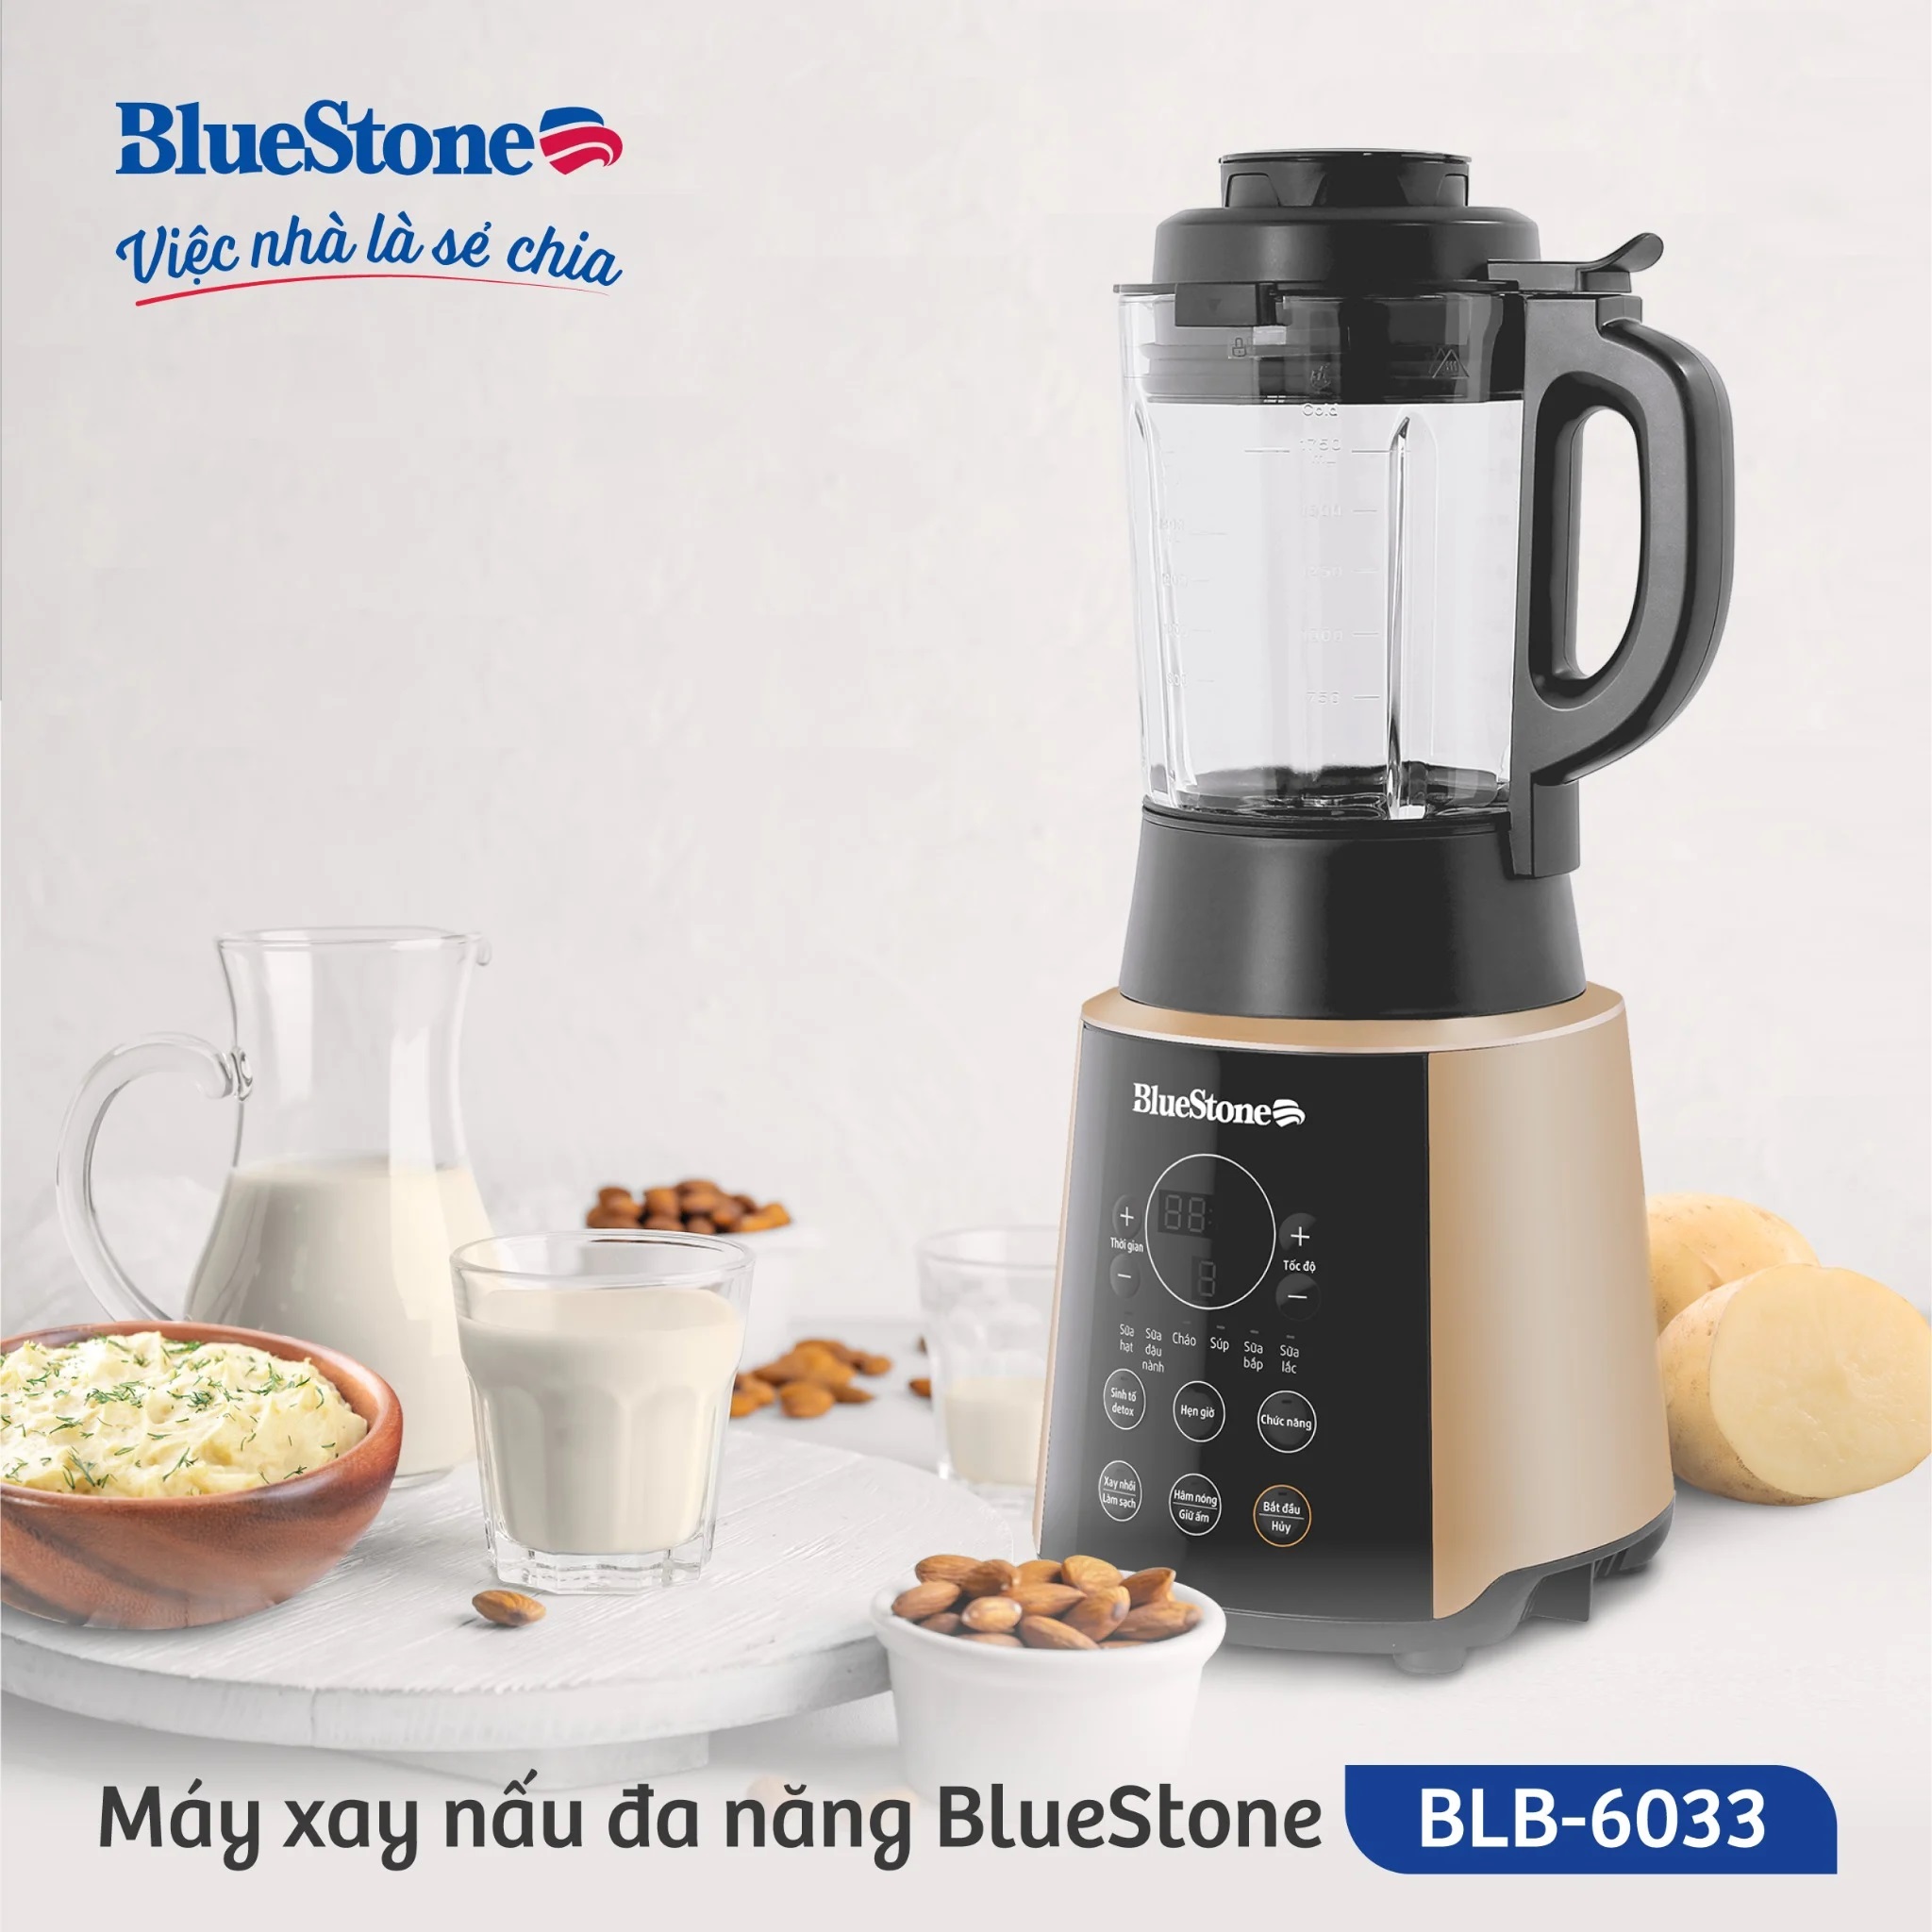 Máy Làm Sữa Hạt Đa Năng Bluestone BLB-6033, Cối Thủy Tinh Borosilicate 1.75L - 9 Chức Năng Xay 1600W, Hàng Chính Hãng